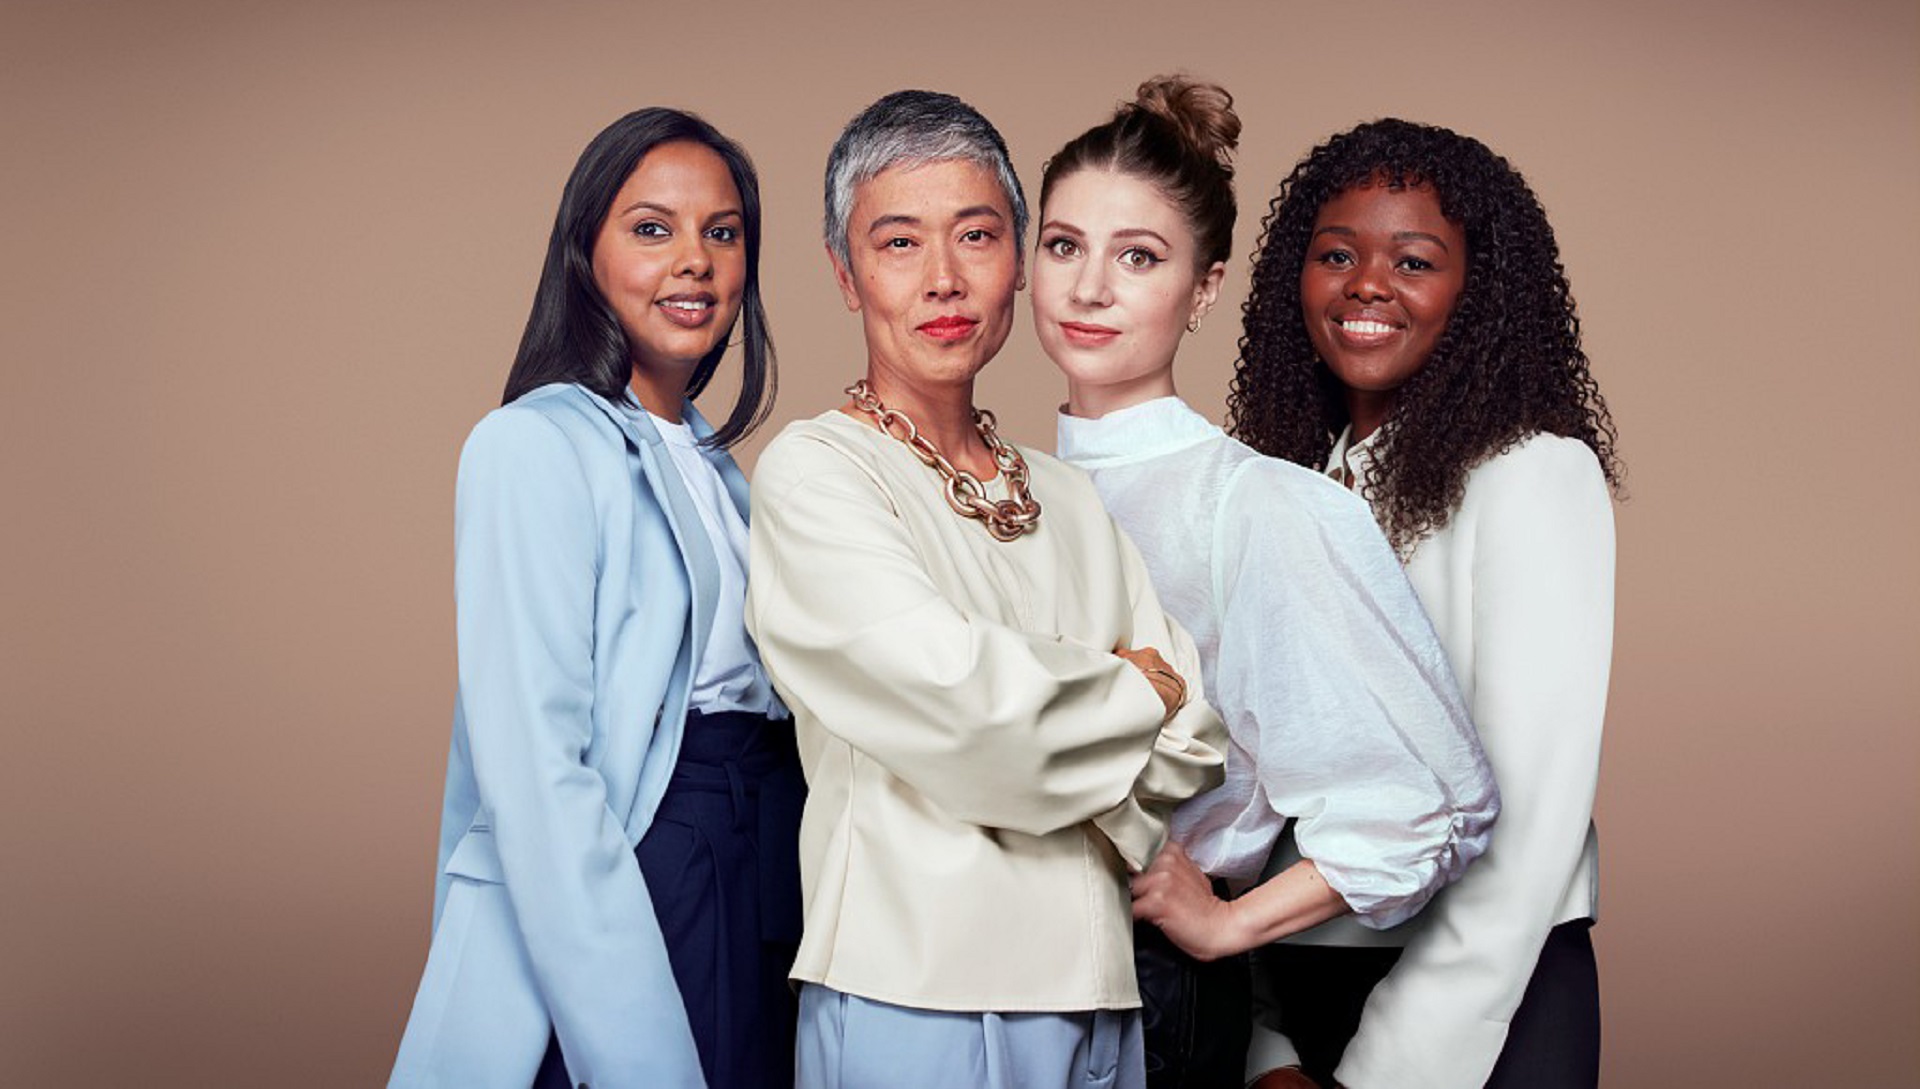 Grupo L’Oréal presenta su manifiesto y propósito que define a la belleza como diversa (Crédito: Prensa LÓréal)